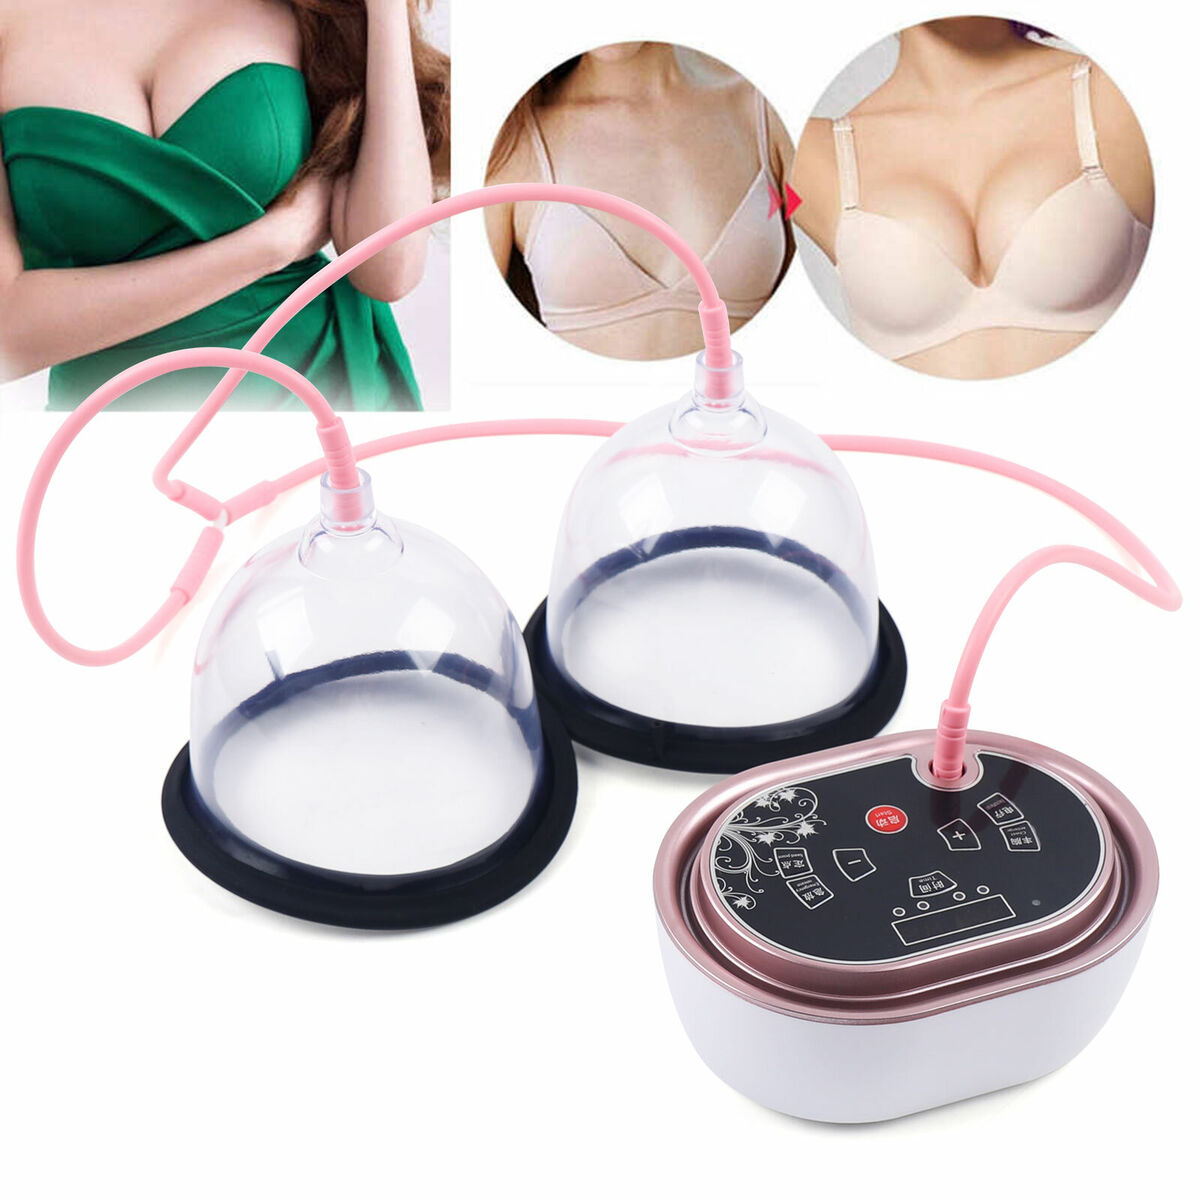 B/C/D Cups Vacuum Breast Enlarger Pump Breast Enlargement Cup Breast Vacuum eBay